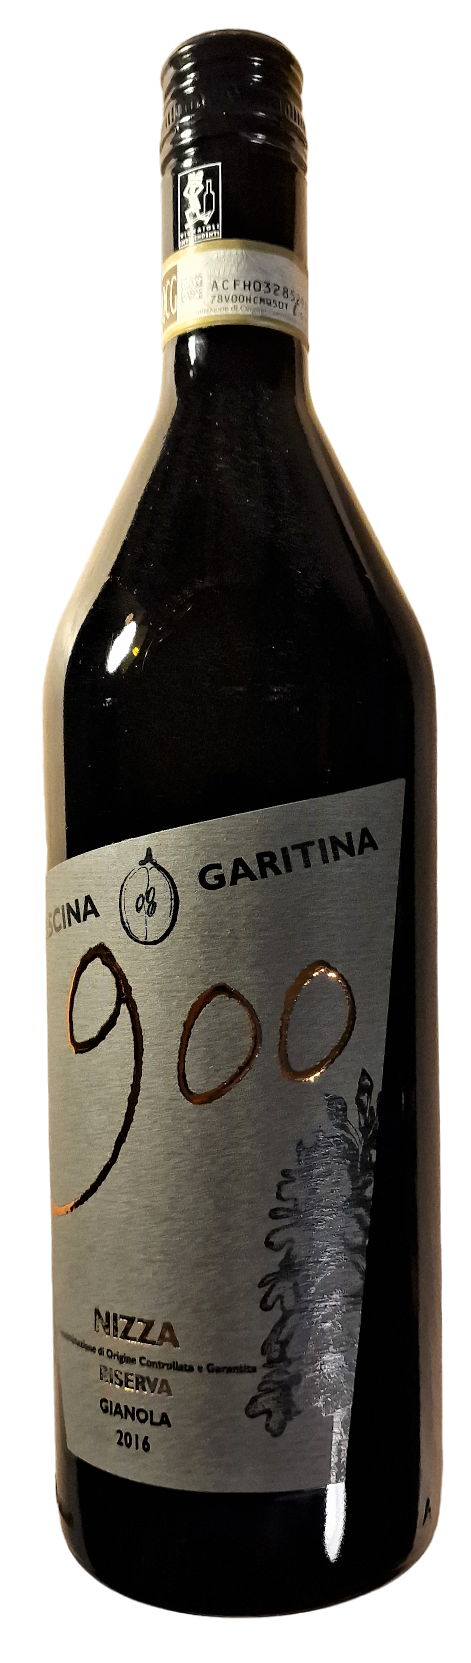 Rött vin, Nizza, Piemonte, Italien, Gianola 2016 Nizza riserva 900